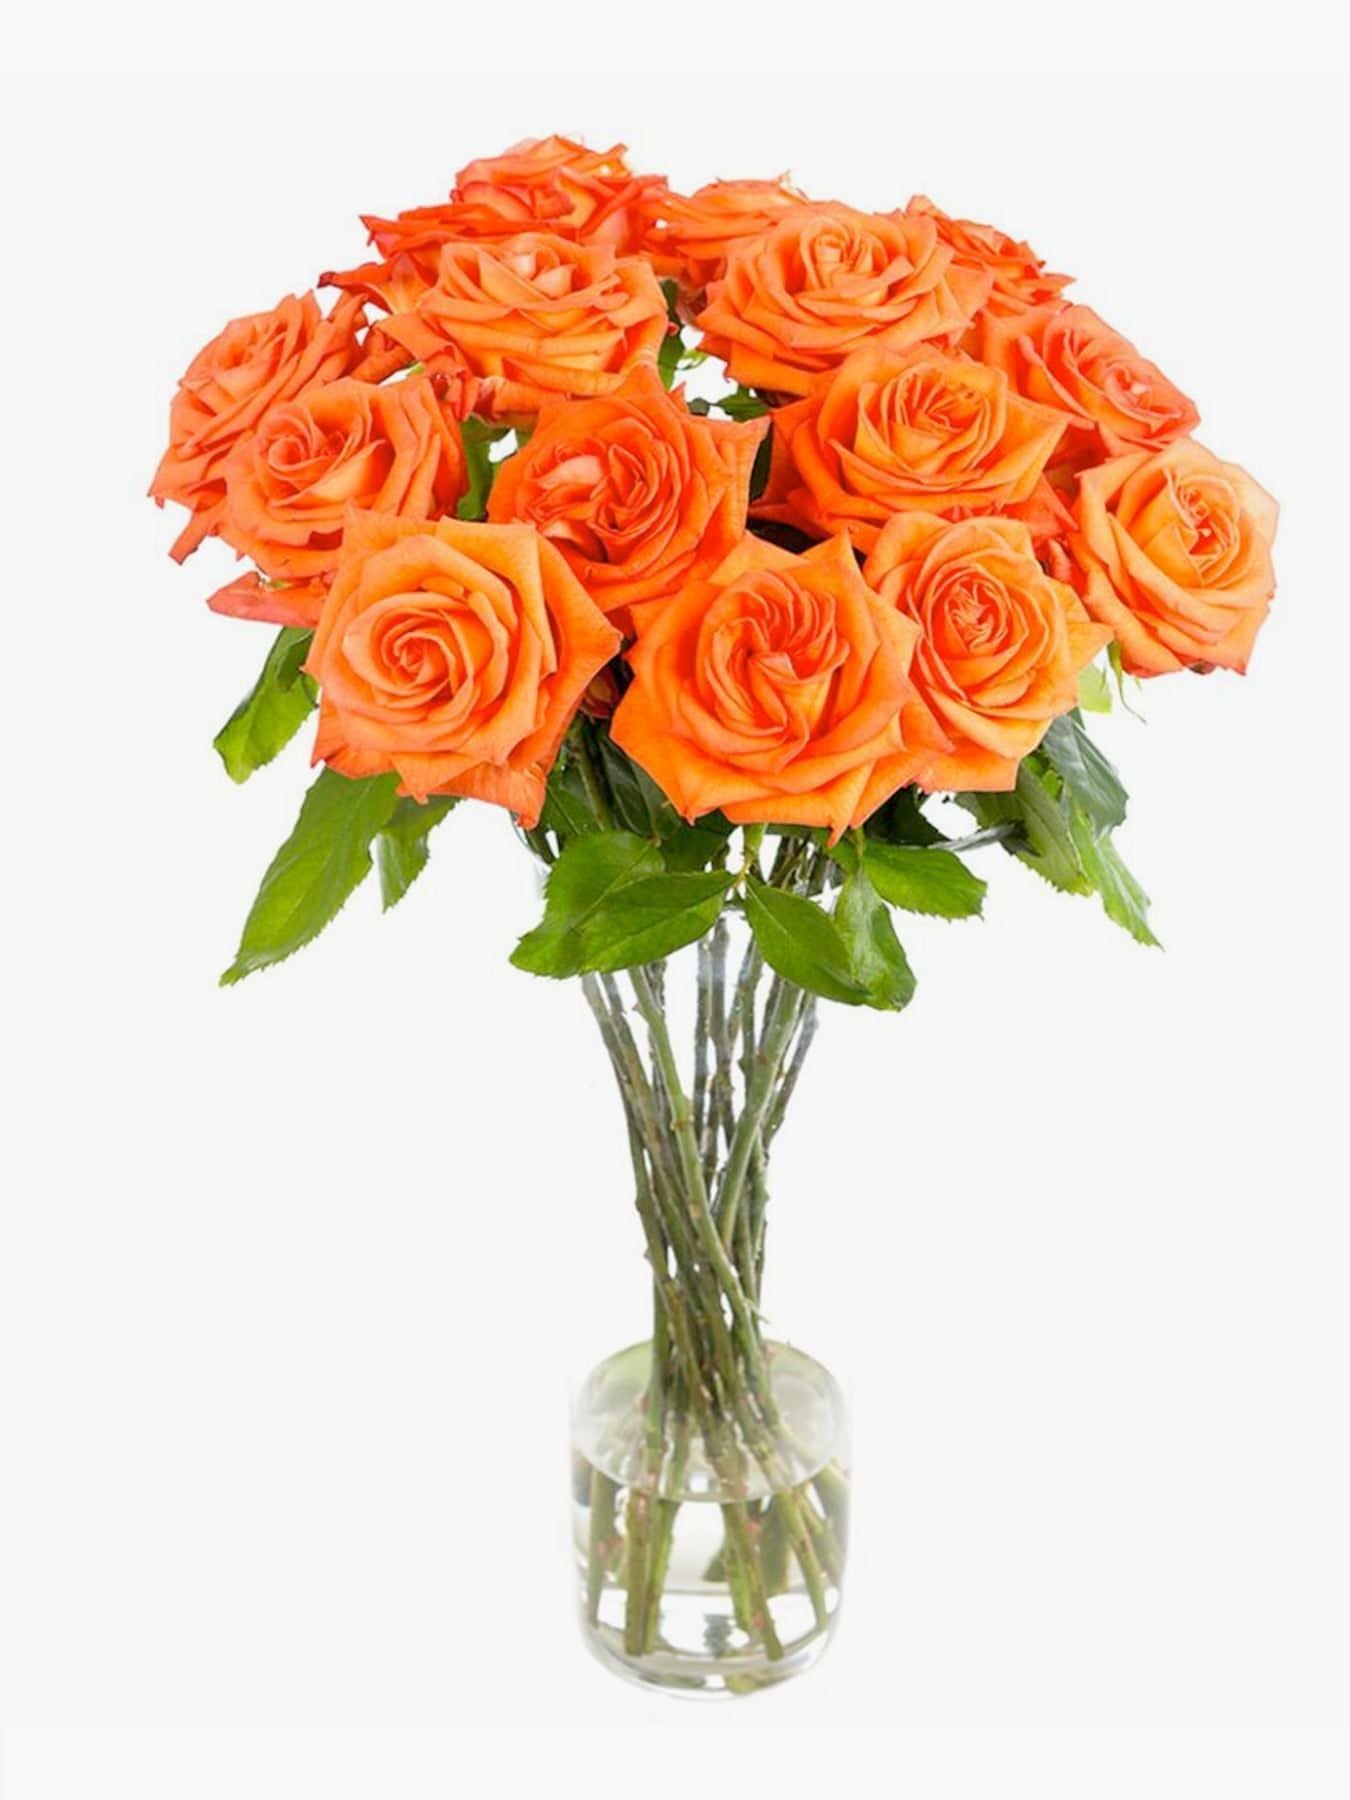 Mandarin Orange Roses - CherryBlossomDubai.ae